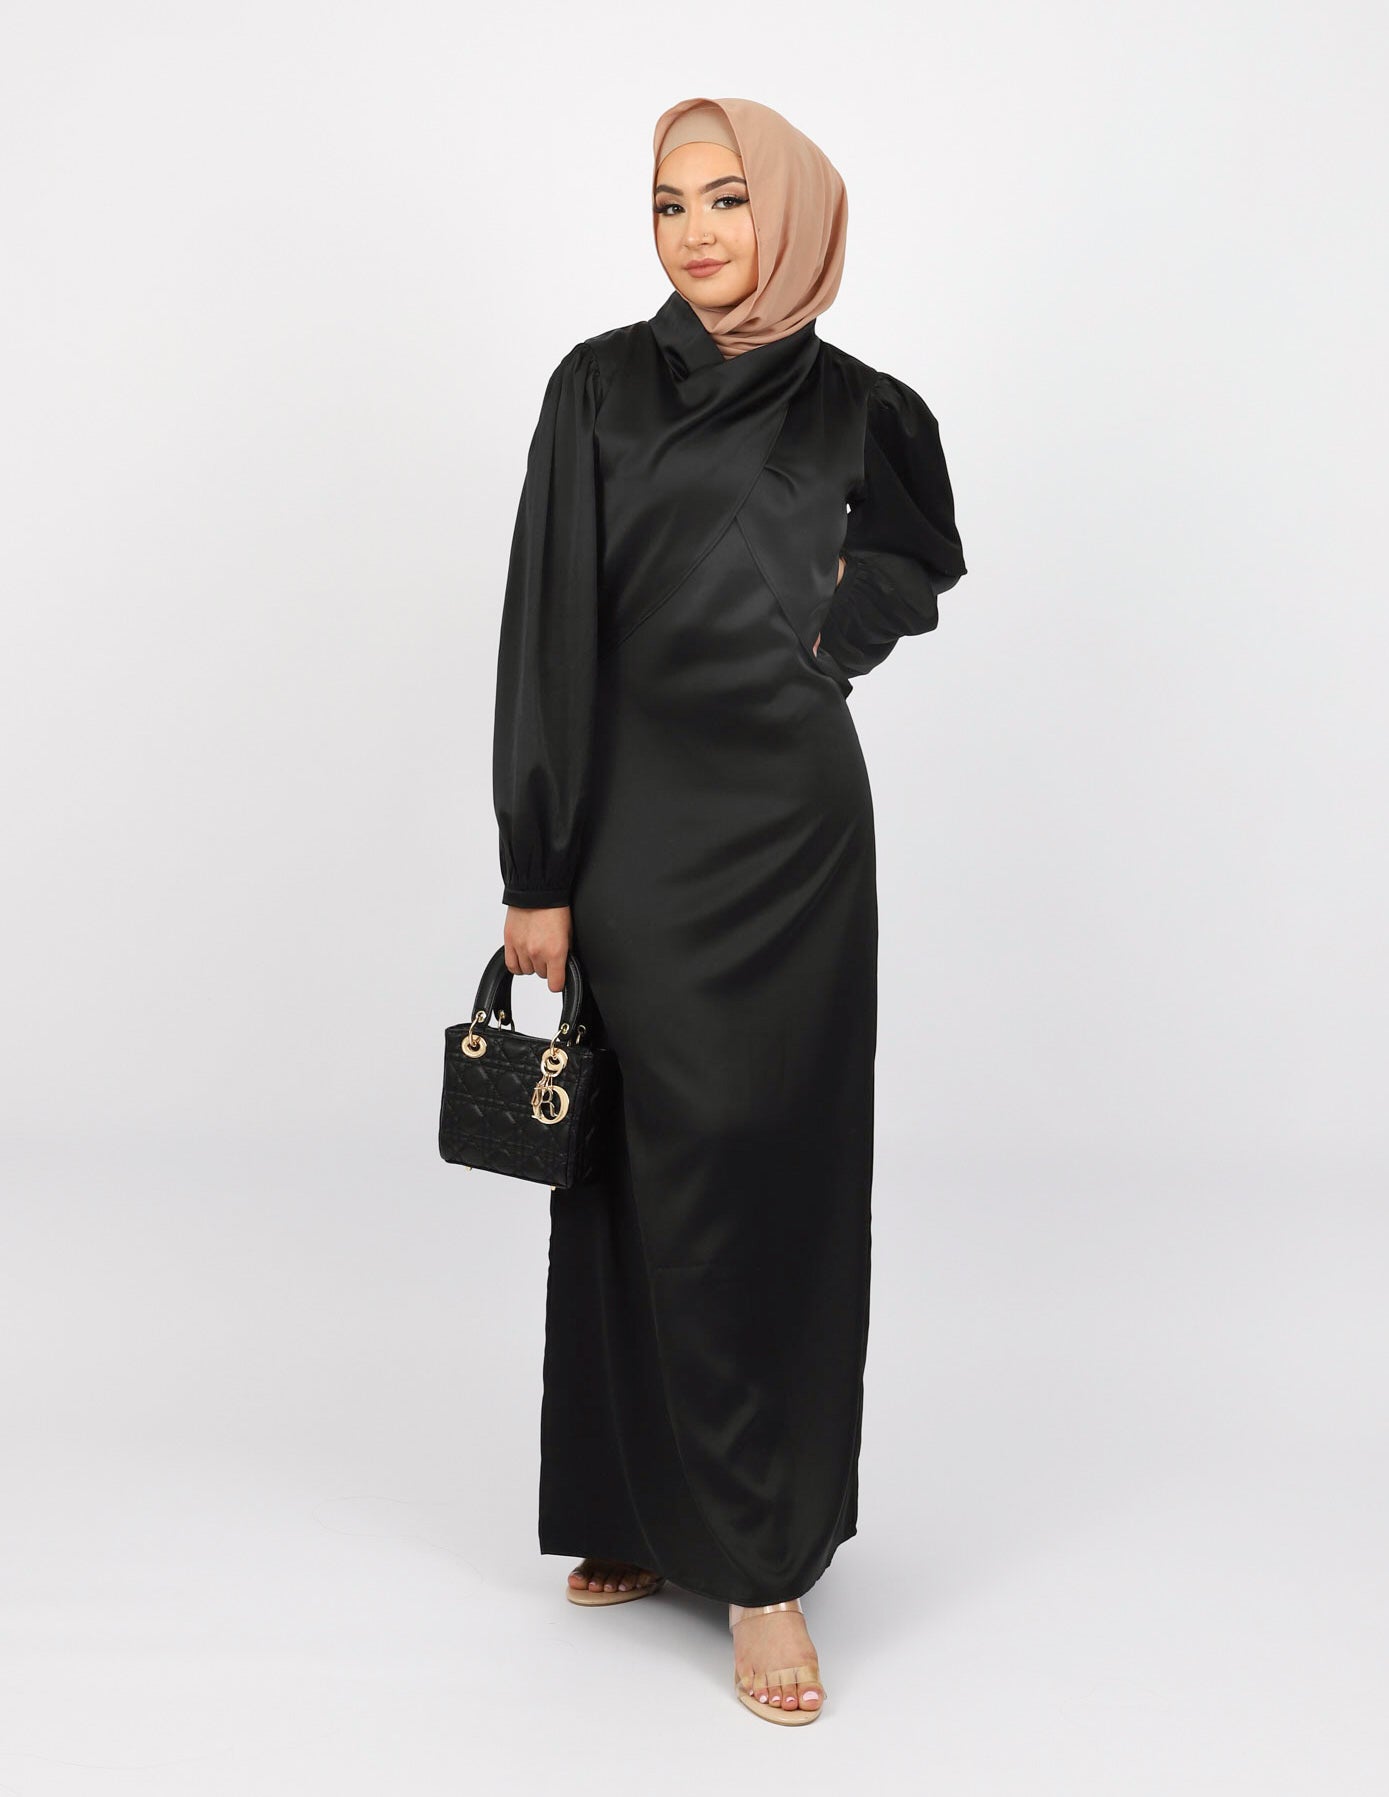 M7725Black-dress-abaya